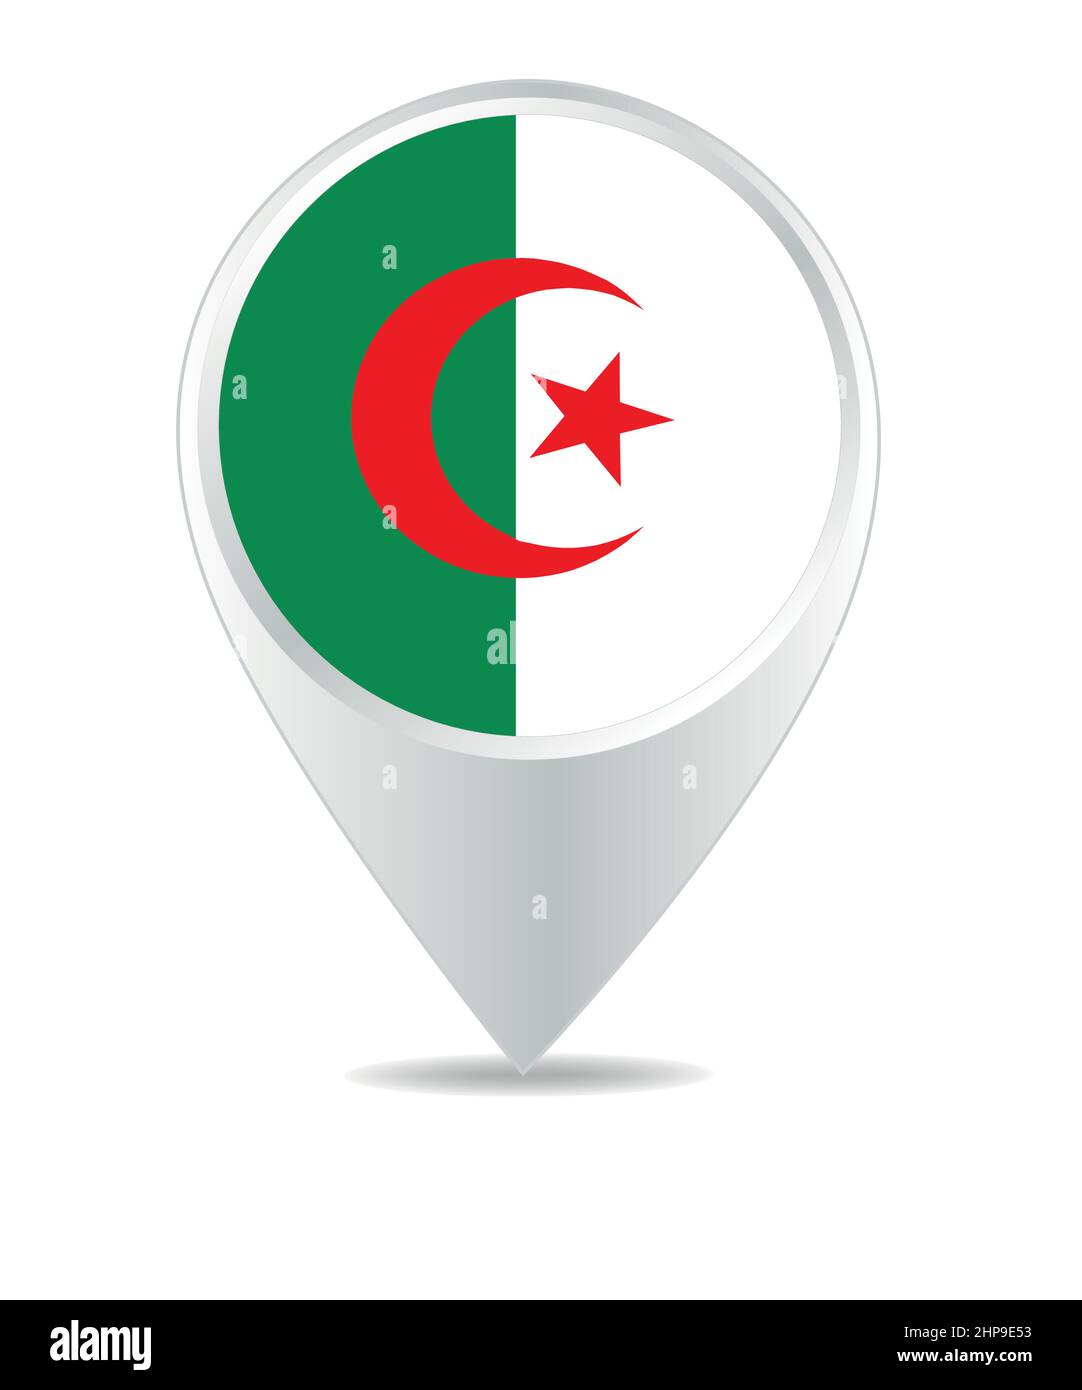 Location Icon for Algeria Stock Vector